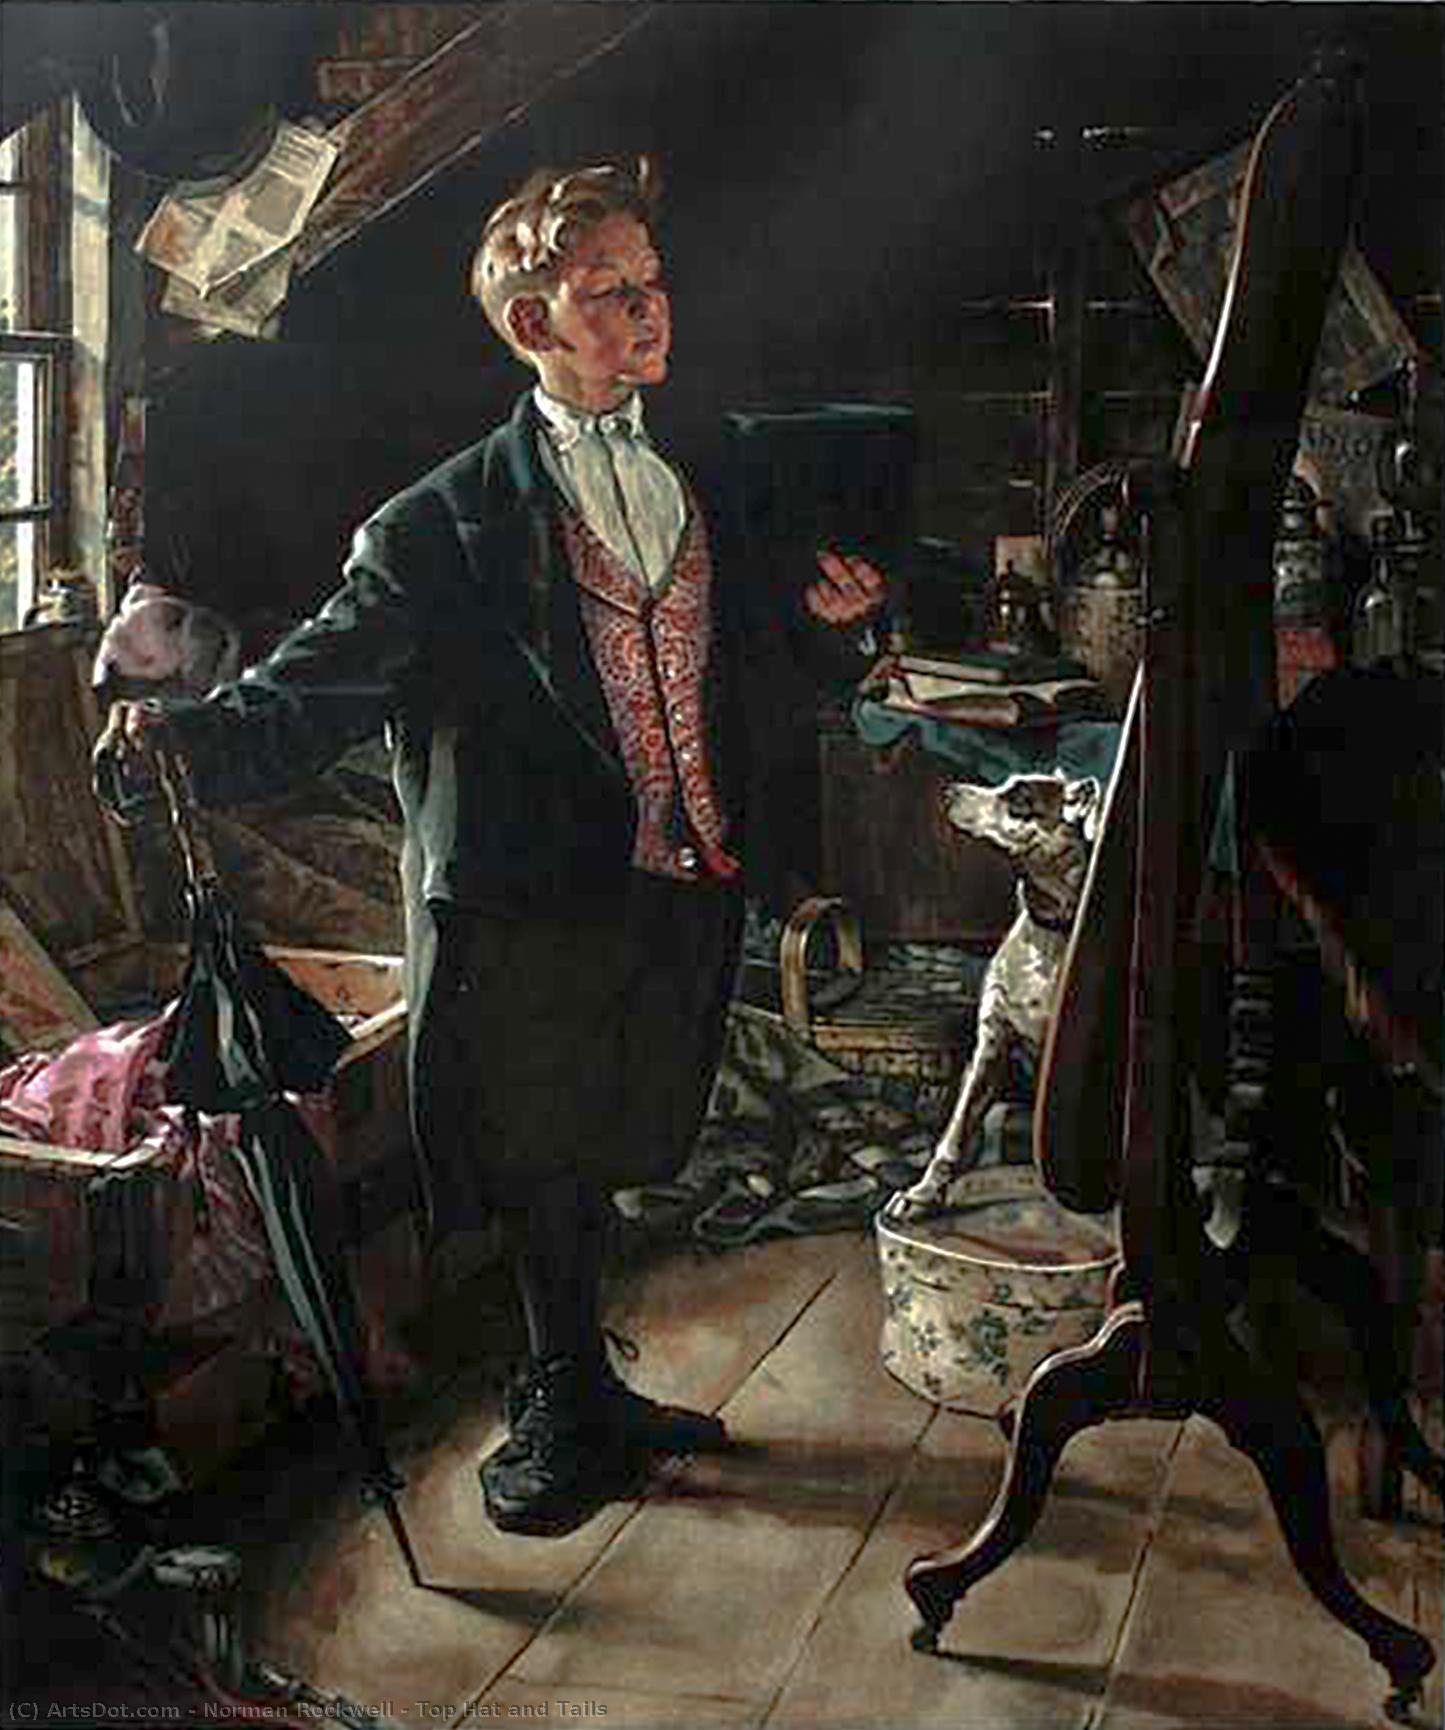 WikiOO.org - Enciklopedija likovnih umjetnosti - Slikarstvo, umjetnička djela Norman Rockwell - Top Hat and Tails